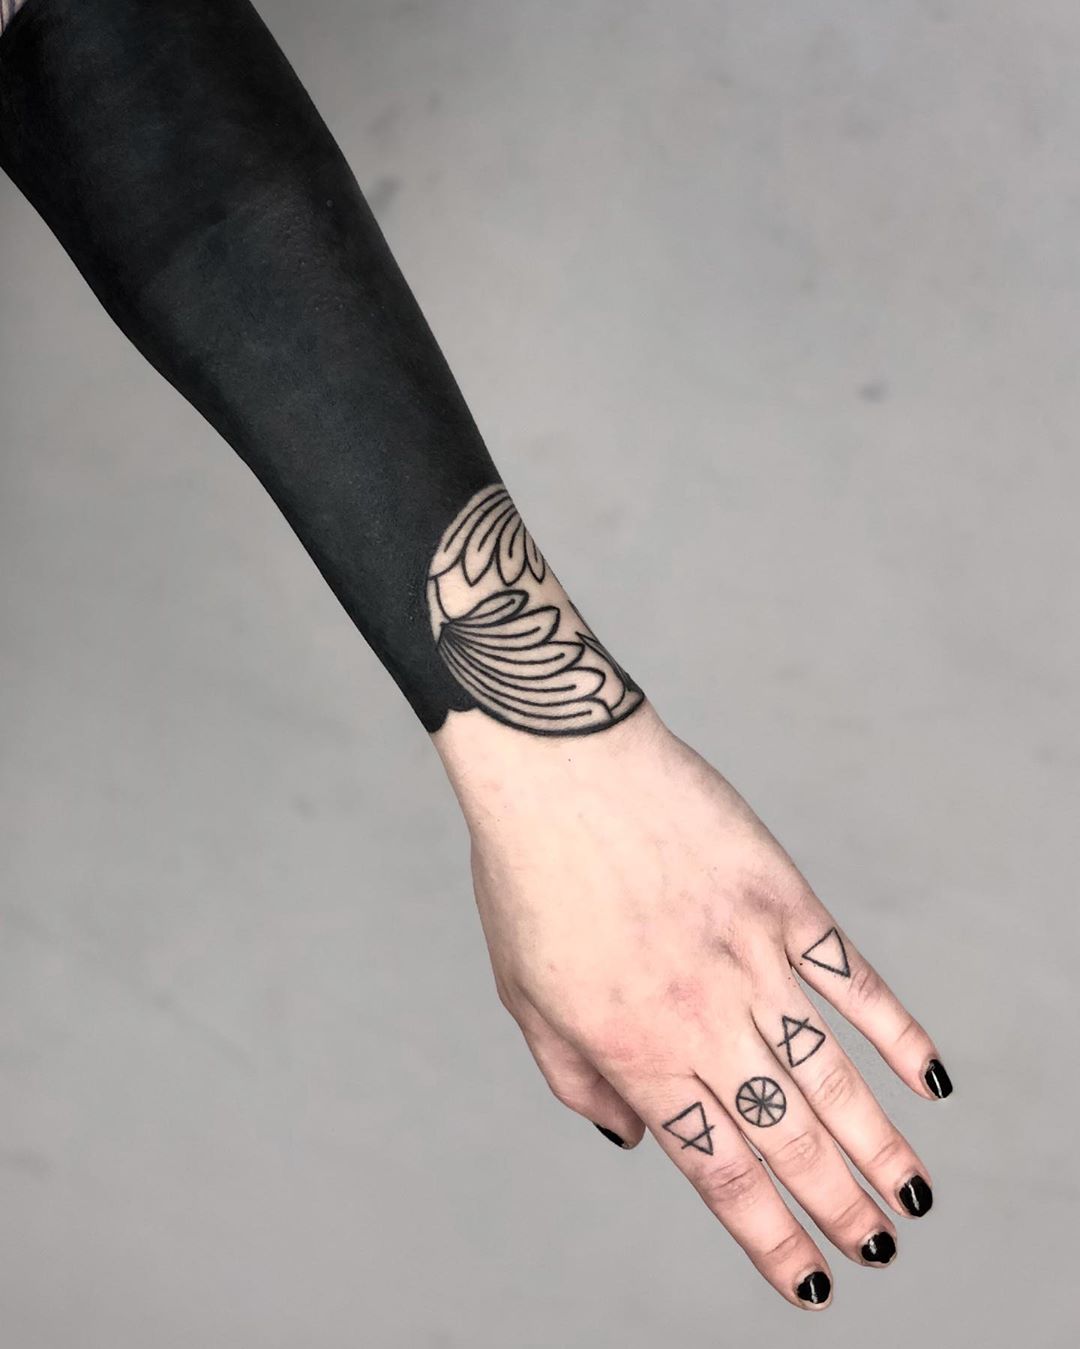 Blackwork forearm piece by tattooist MAIC 